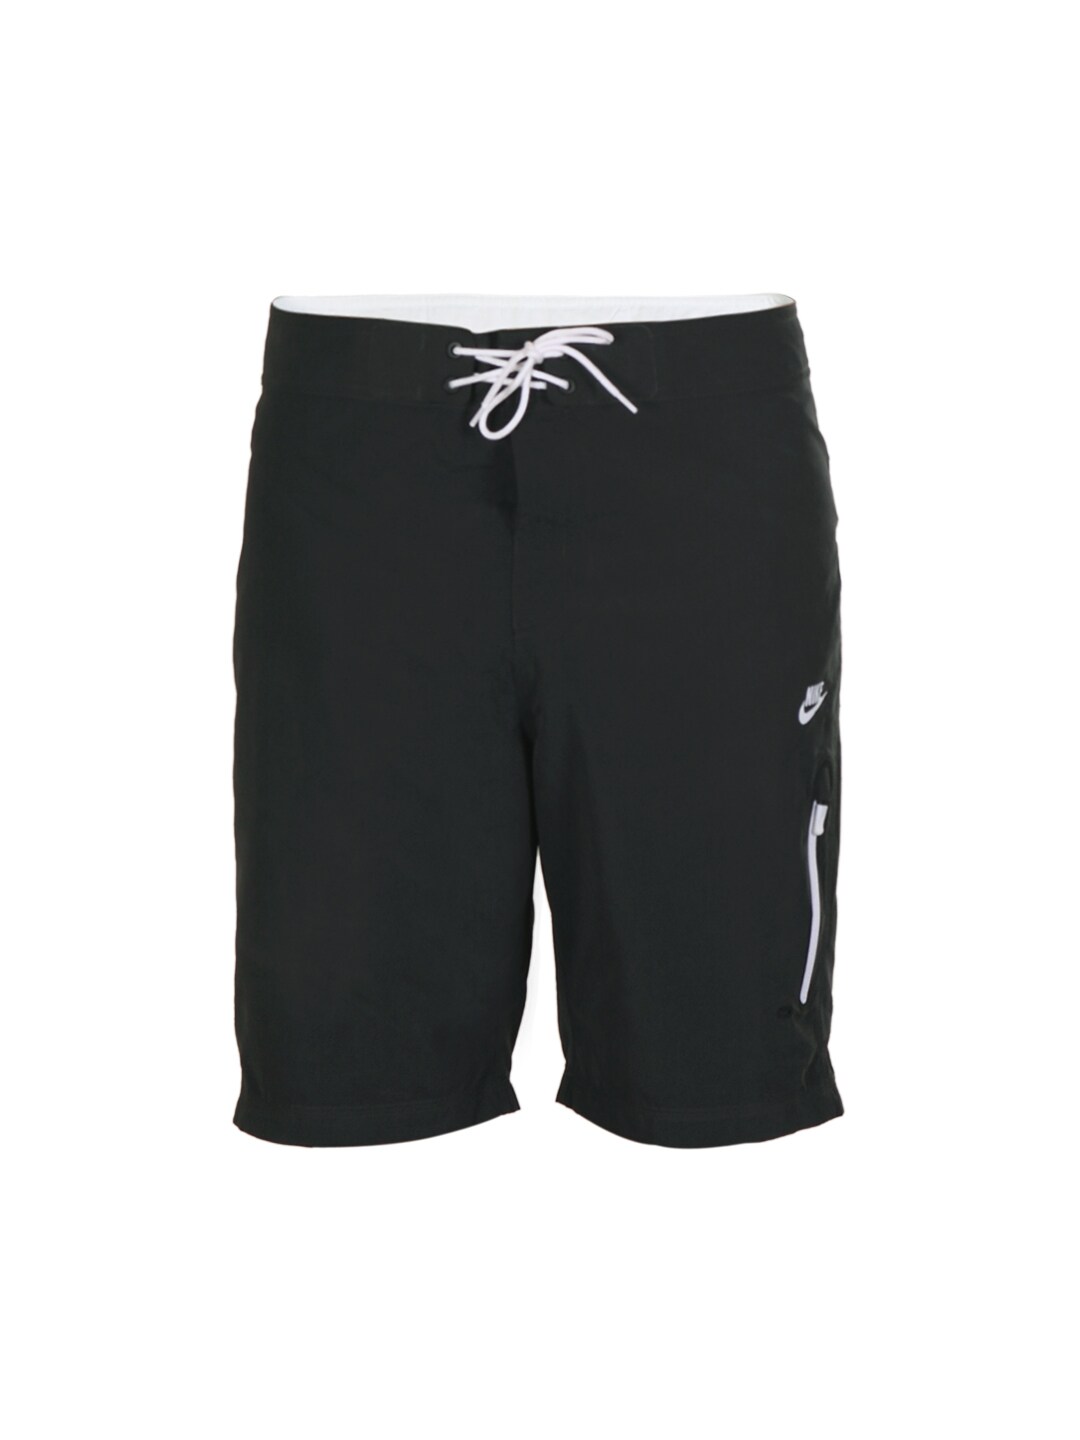 Nike Men Charcoal Grey Shorts